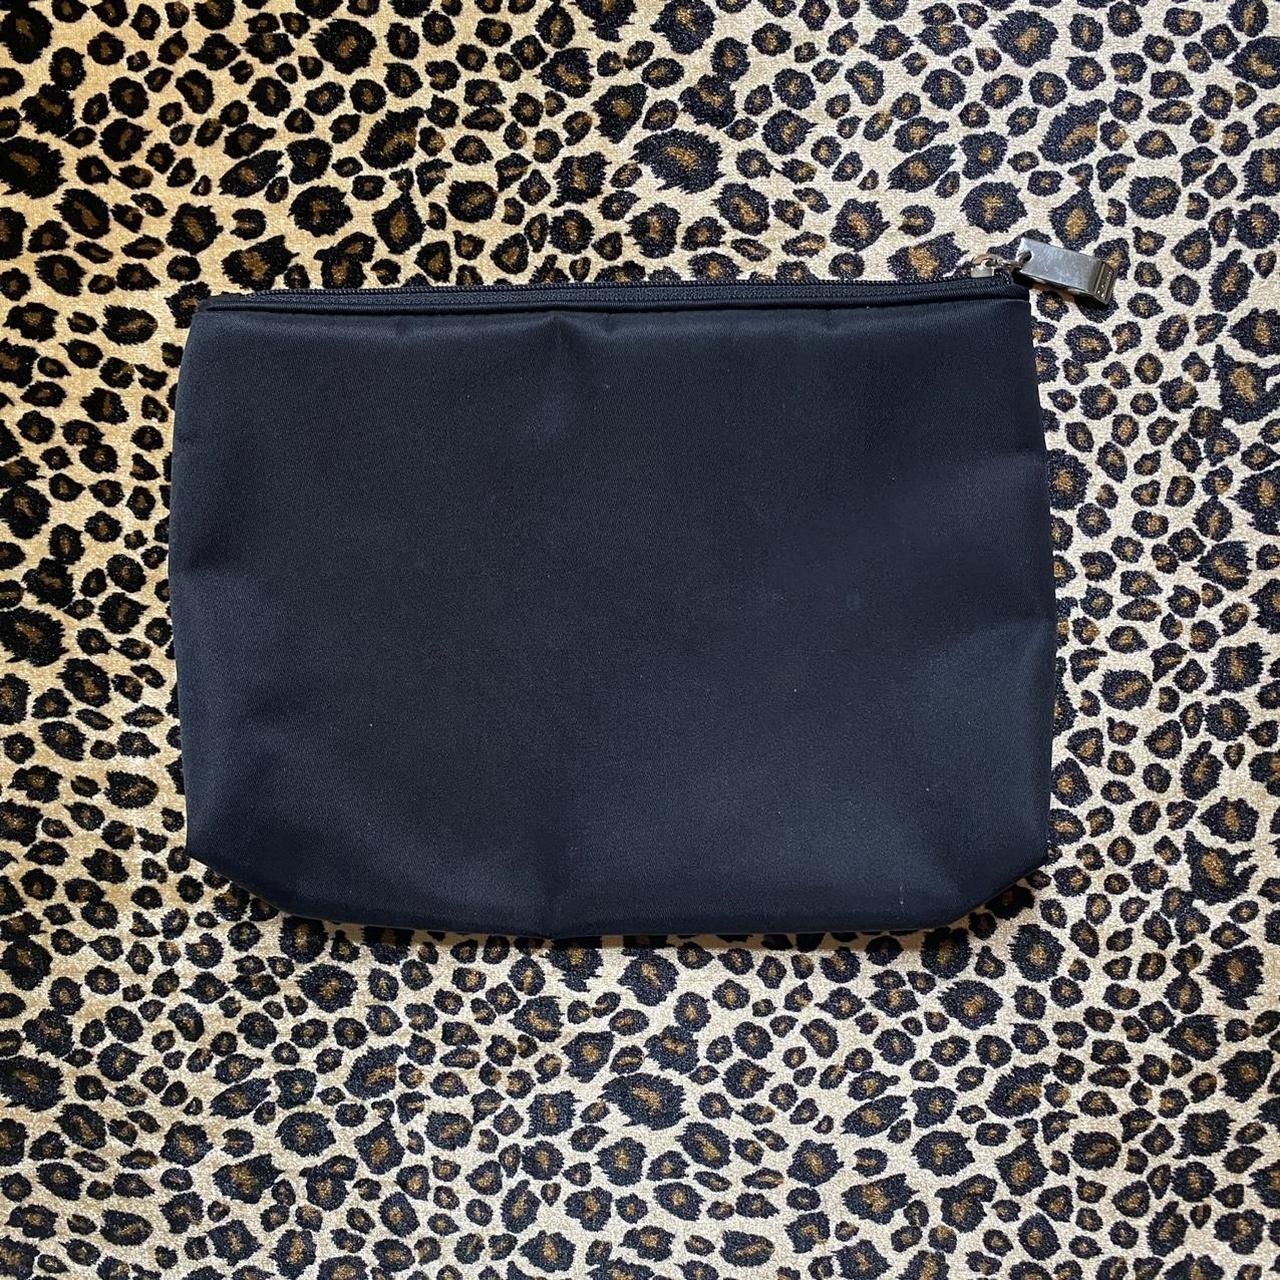 Product Image 2 - ♥︎ DKNY makeup bag ♥︎

♡